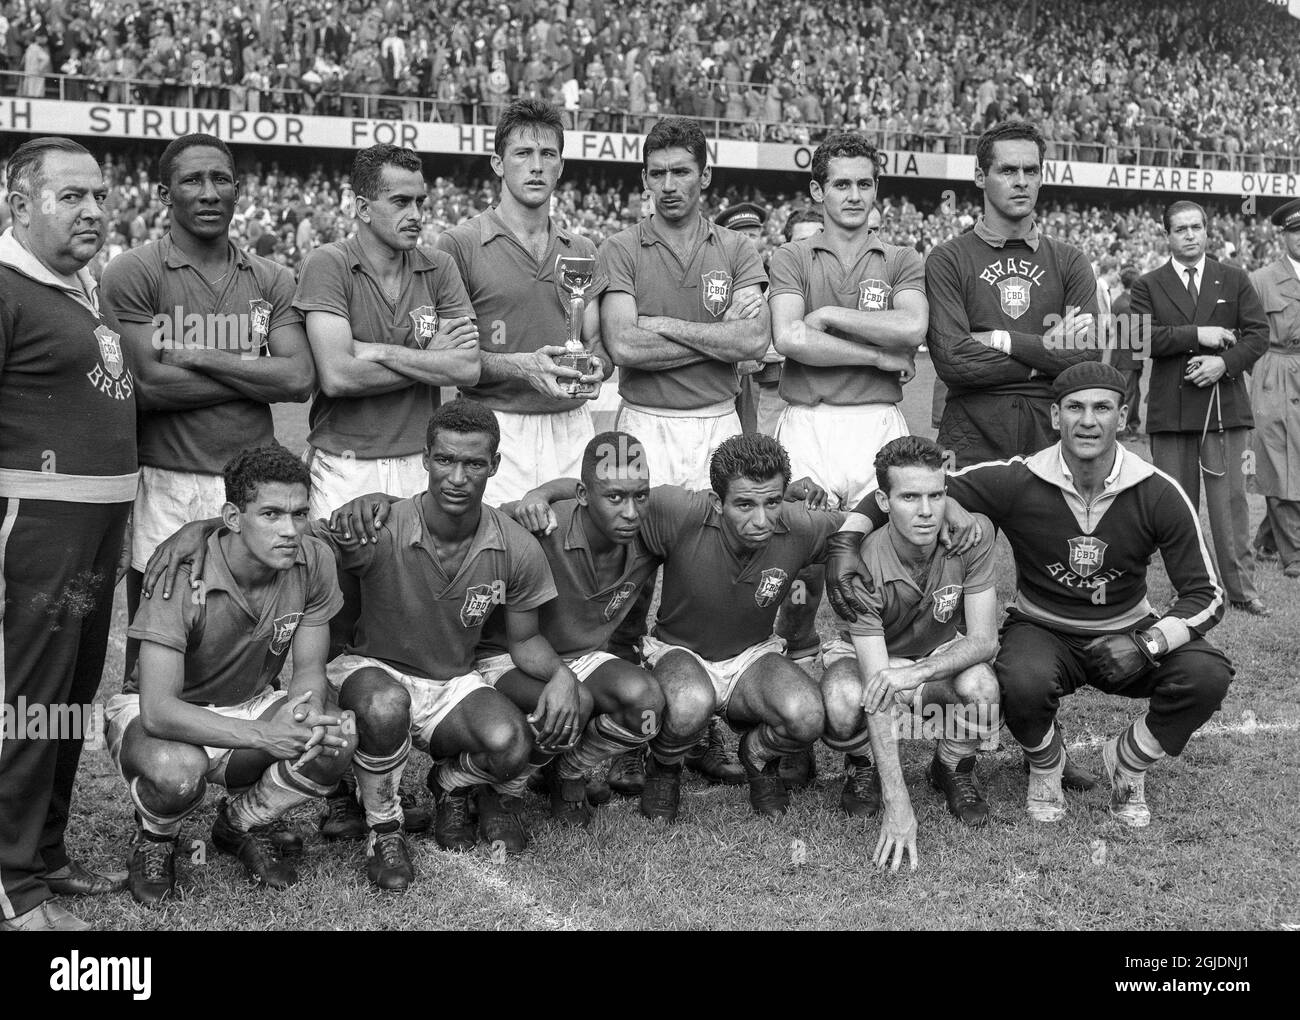 STOCKHOLM 1958-06-29 Brasiliens Fußballnationalmannschaft posiert mit der  Trophäe nach dem Gewinn des FIFA-WM-Finales 1958 gegen Schweden im  Rasunda-Stadion in Stockholm, Schweden. Brasilien gewann 5-2 und wurde zum  ersten Mal Weltmeister. Foto: Pressens